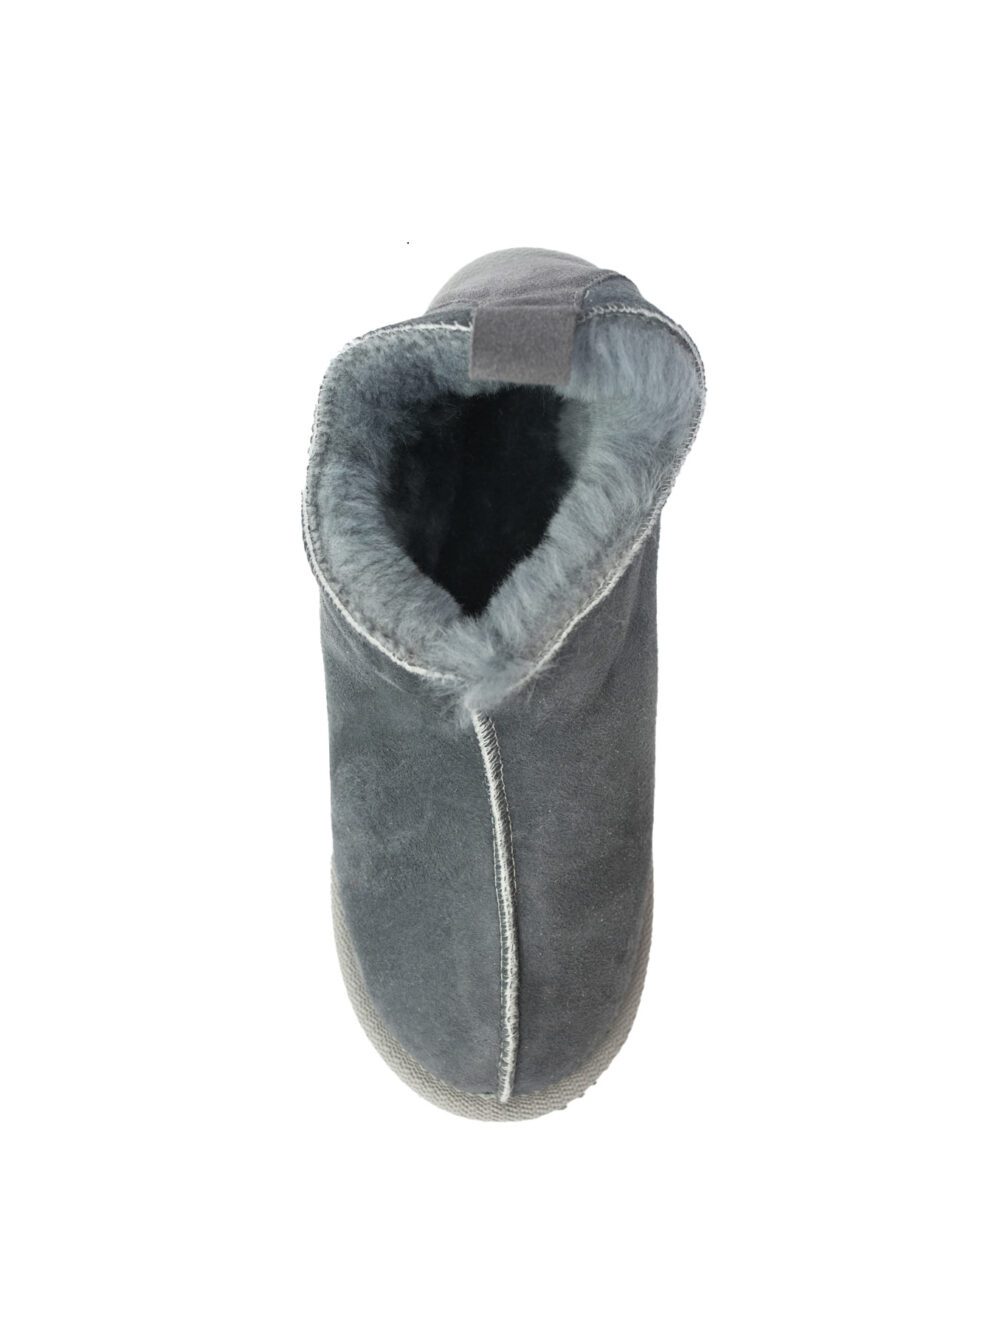 Slippers Cambridge Grey Accessories Producent owczych skór dekoracyjnych | Tannery Sheepskin | KalSkór 5